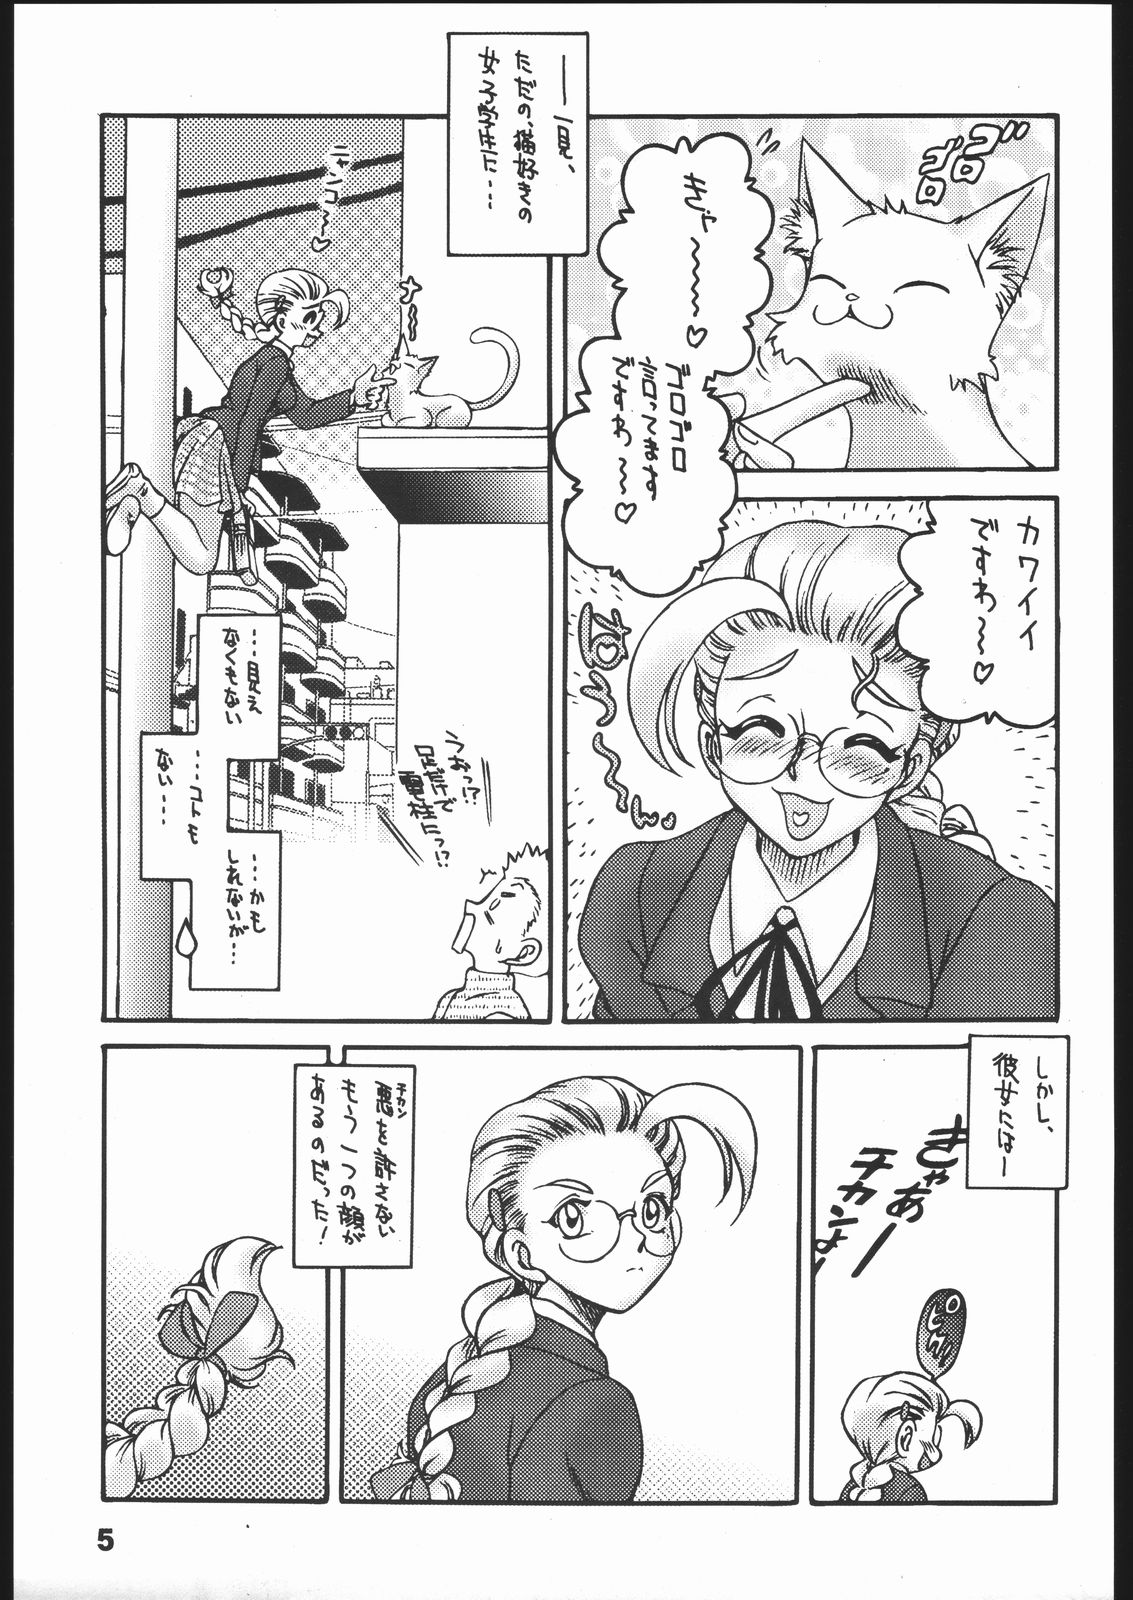 [Street Fighter] Nousatsu Sentai Blonde Antennas 2 - Yellow Alert (Sunset Dreamer) page 4 full